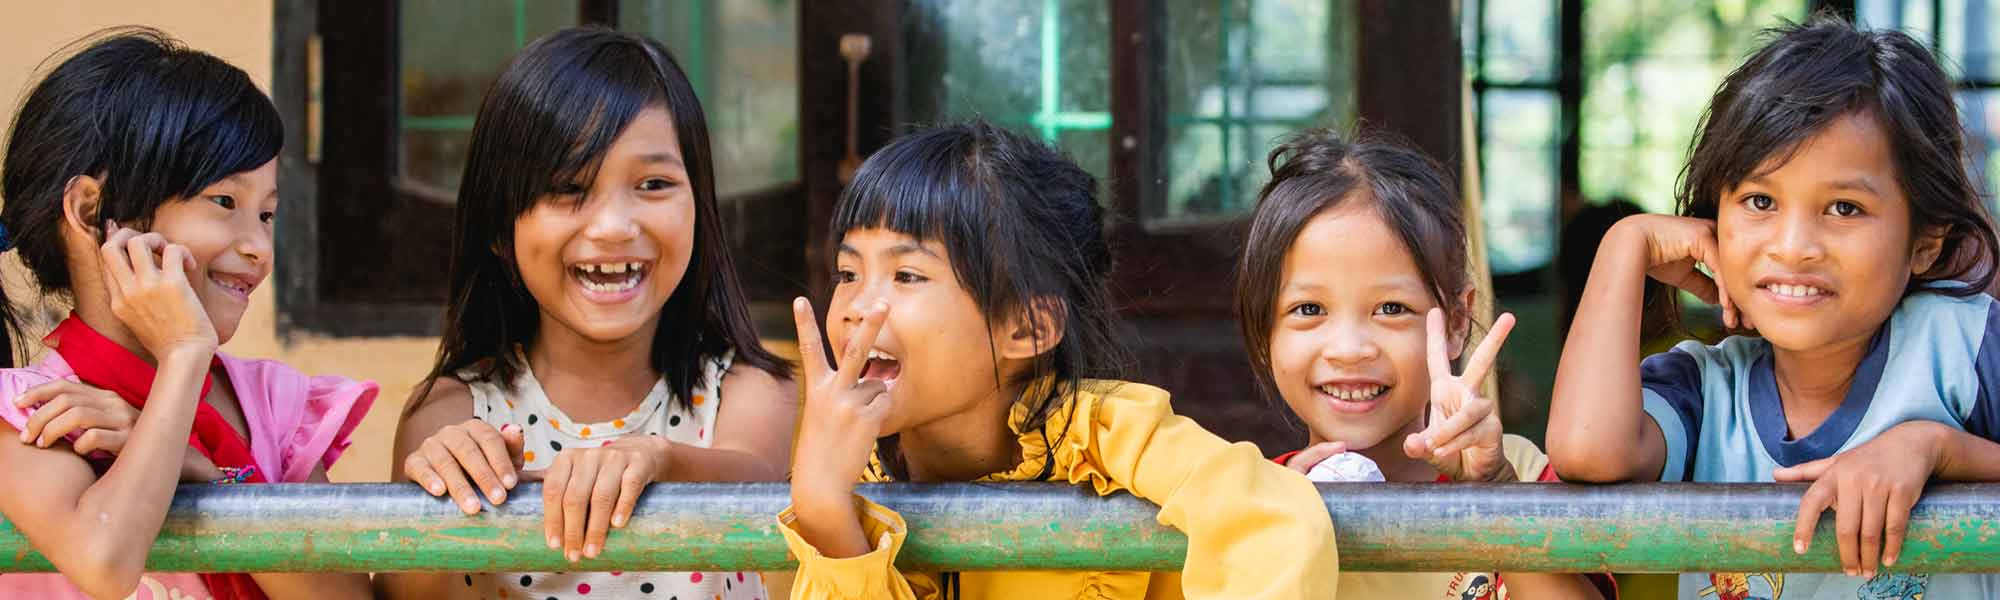 Jenter fra Vietnam. Vi jobber med å beskytte barn mot vold og overgrep